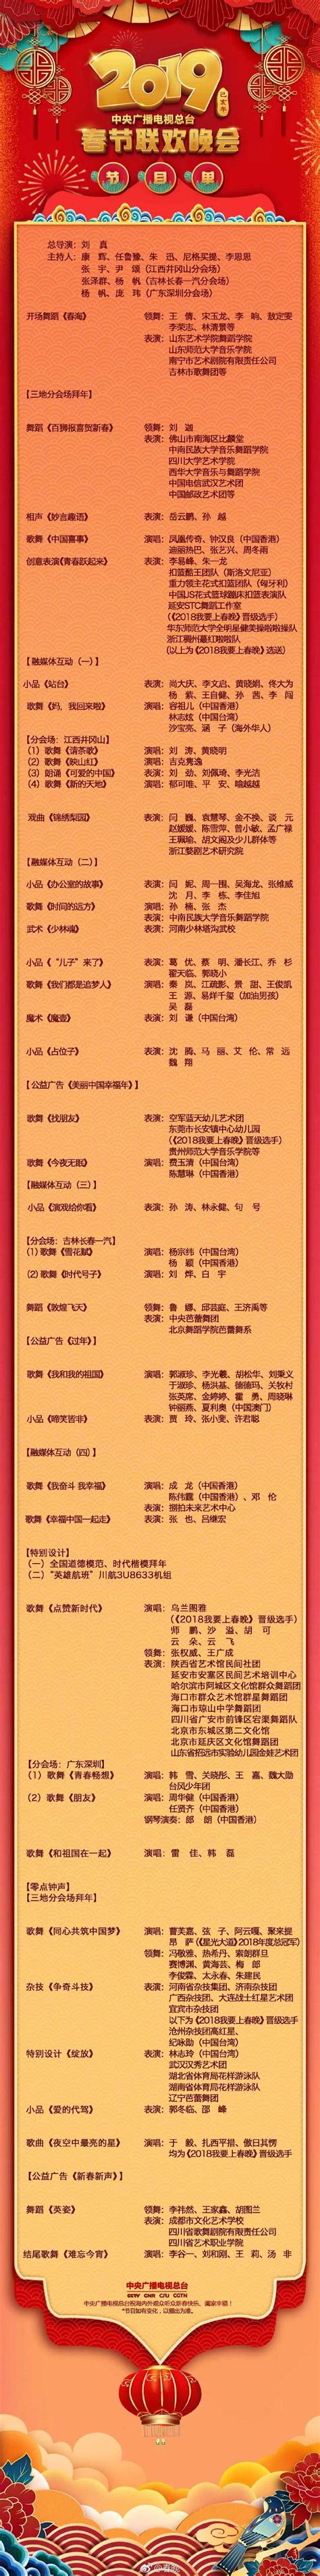 2019年央视春晚(导演+主持人+节目单+直播时间)- 北京本地宝